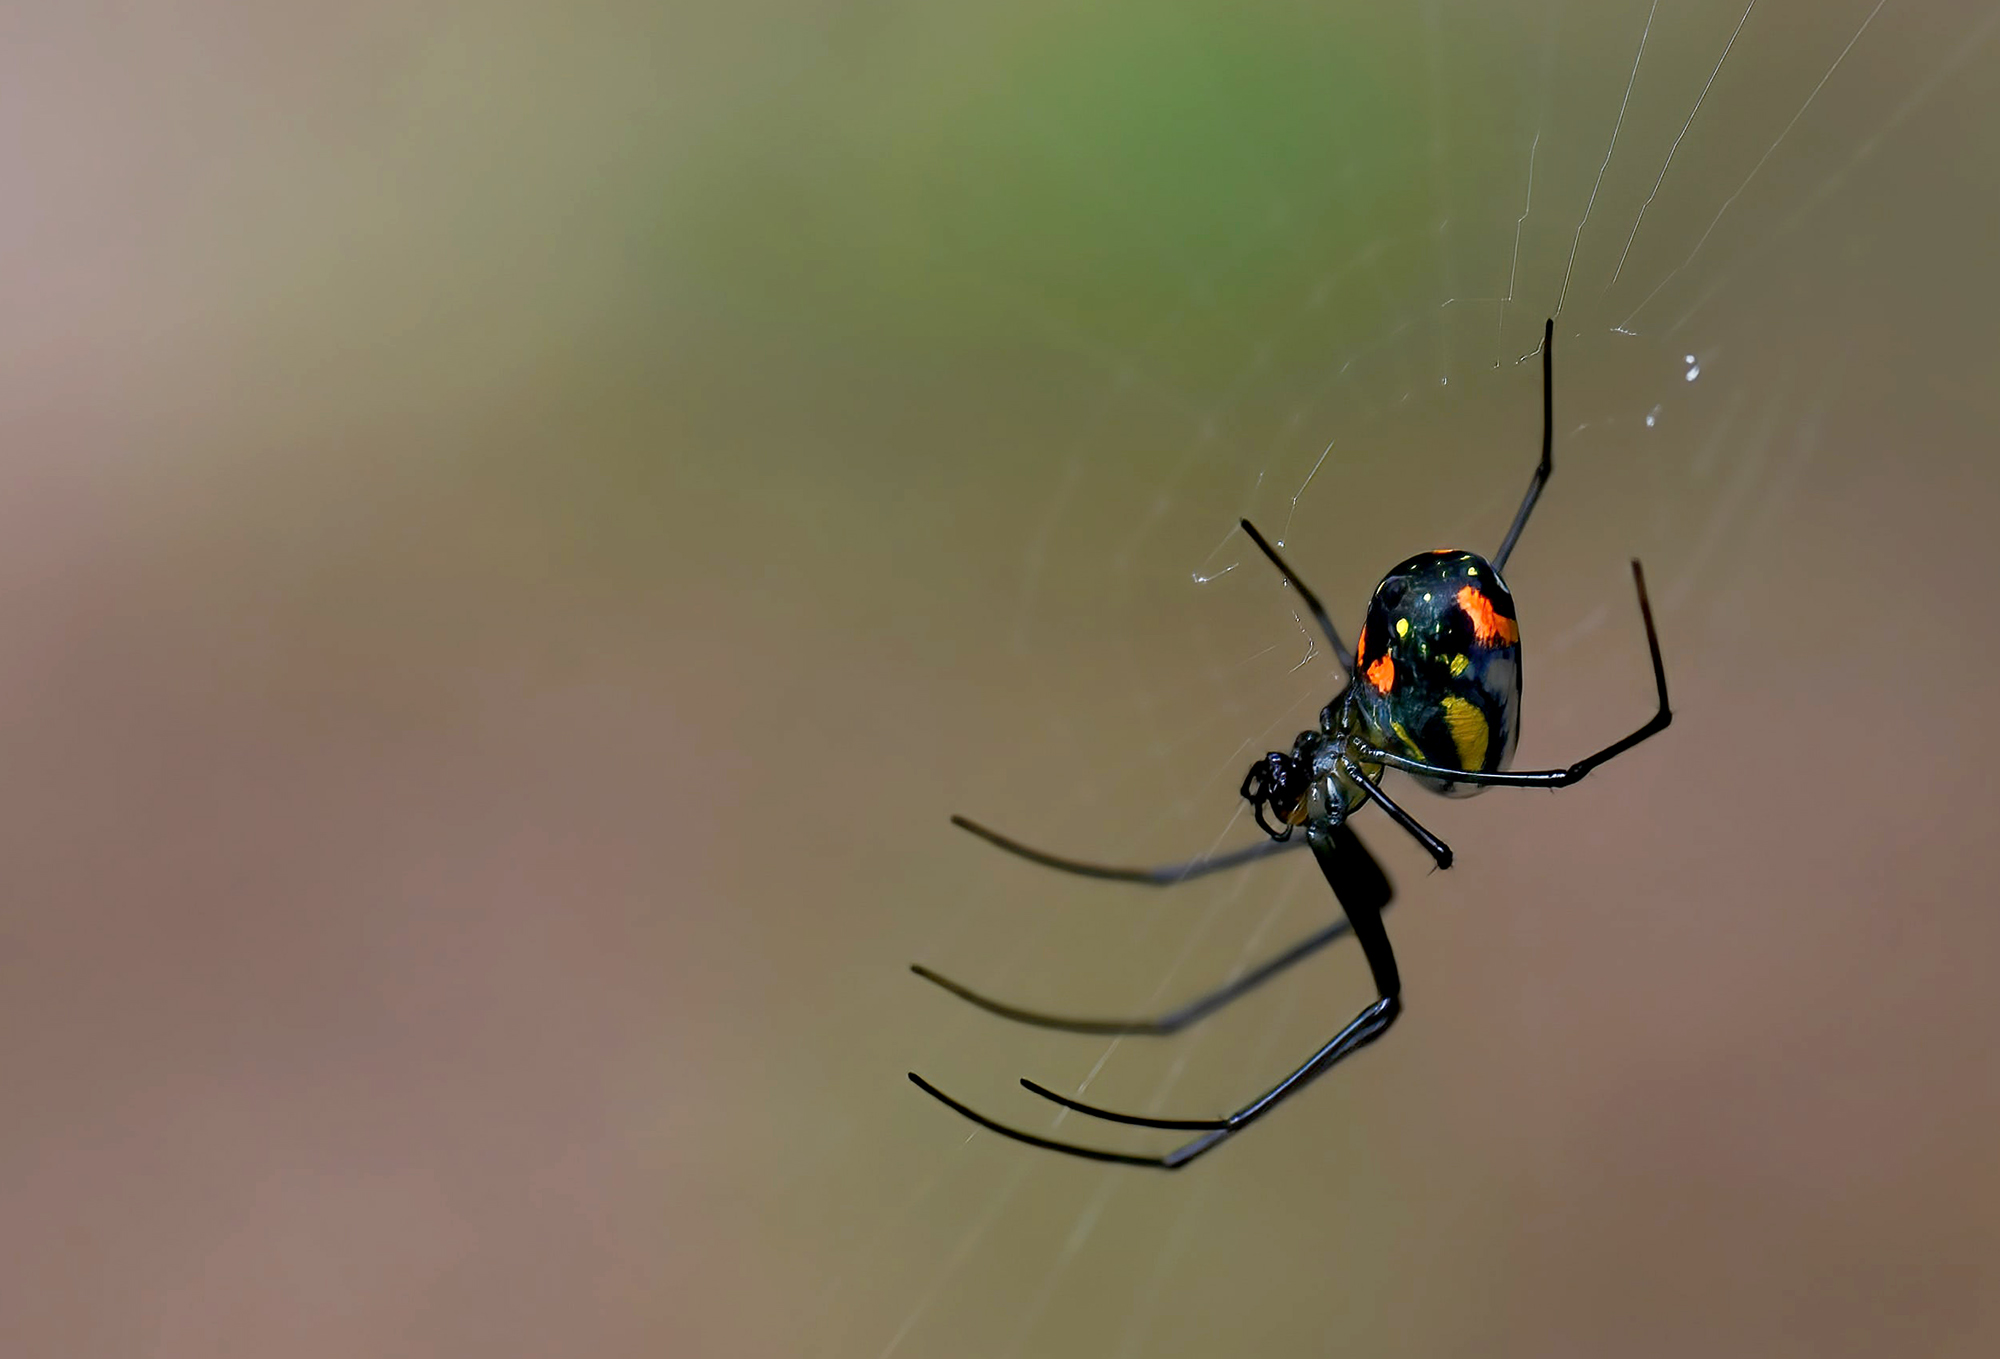 black widow spider on web